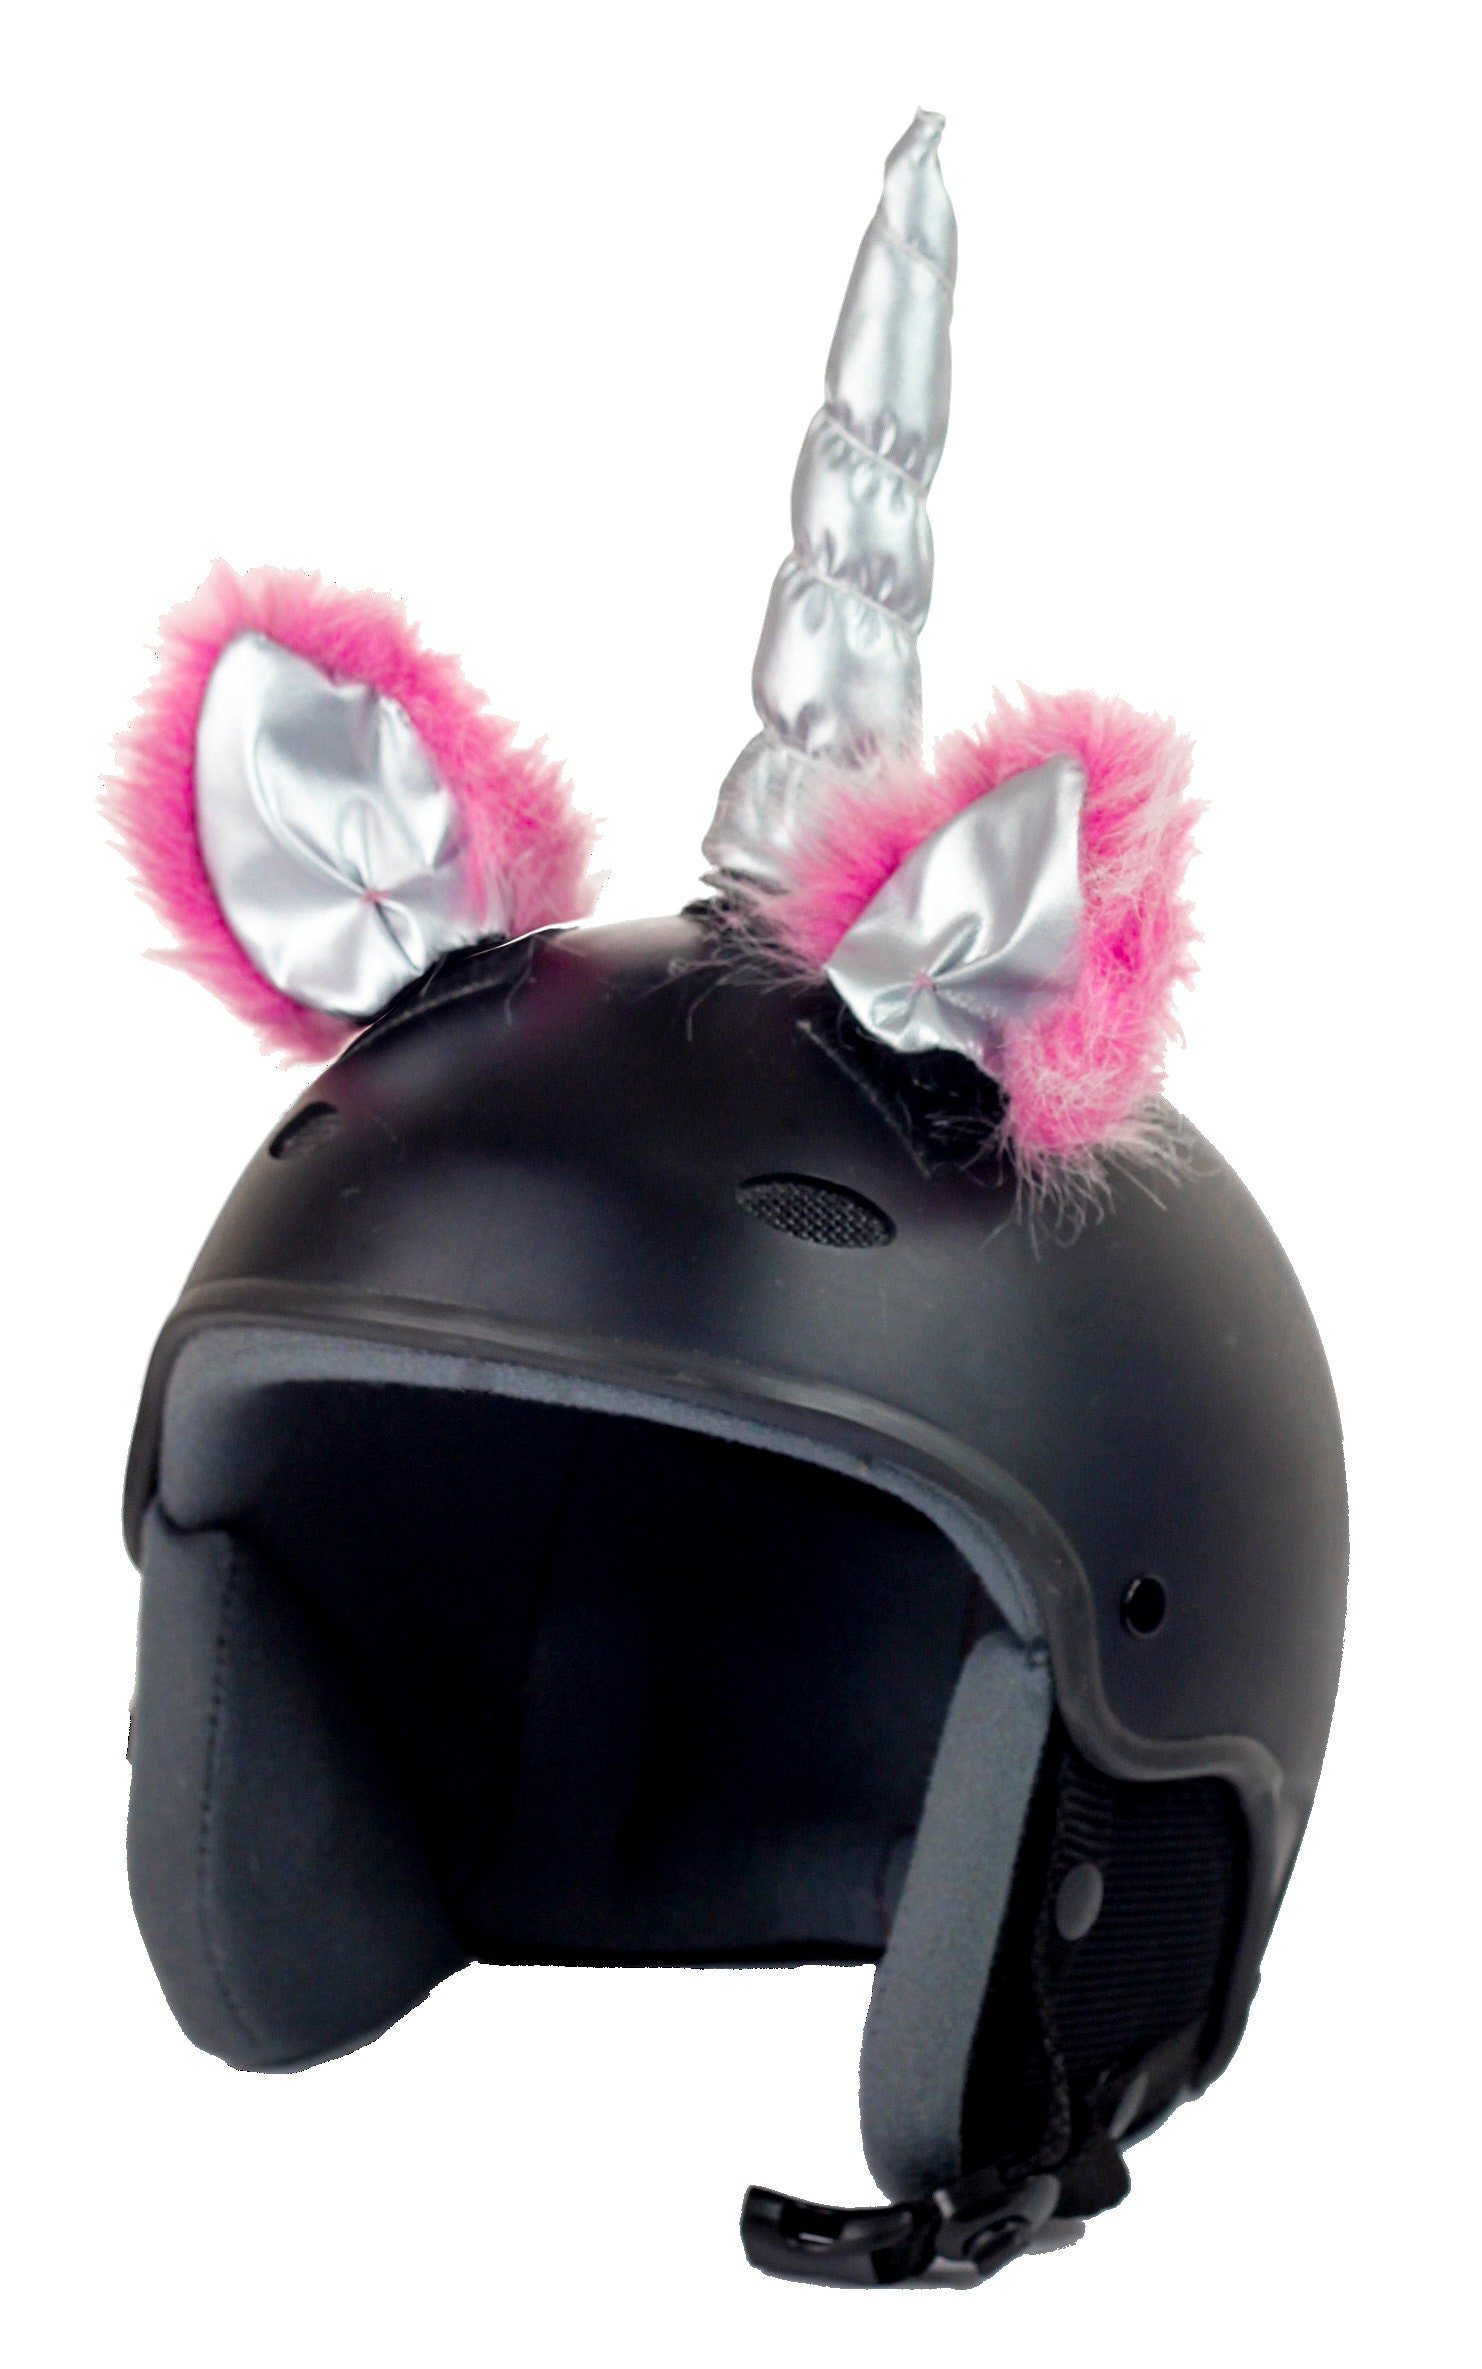 Unicorn on Helmet, Horns on Helmet, Ears on Helmet, Ski Helmet